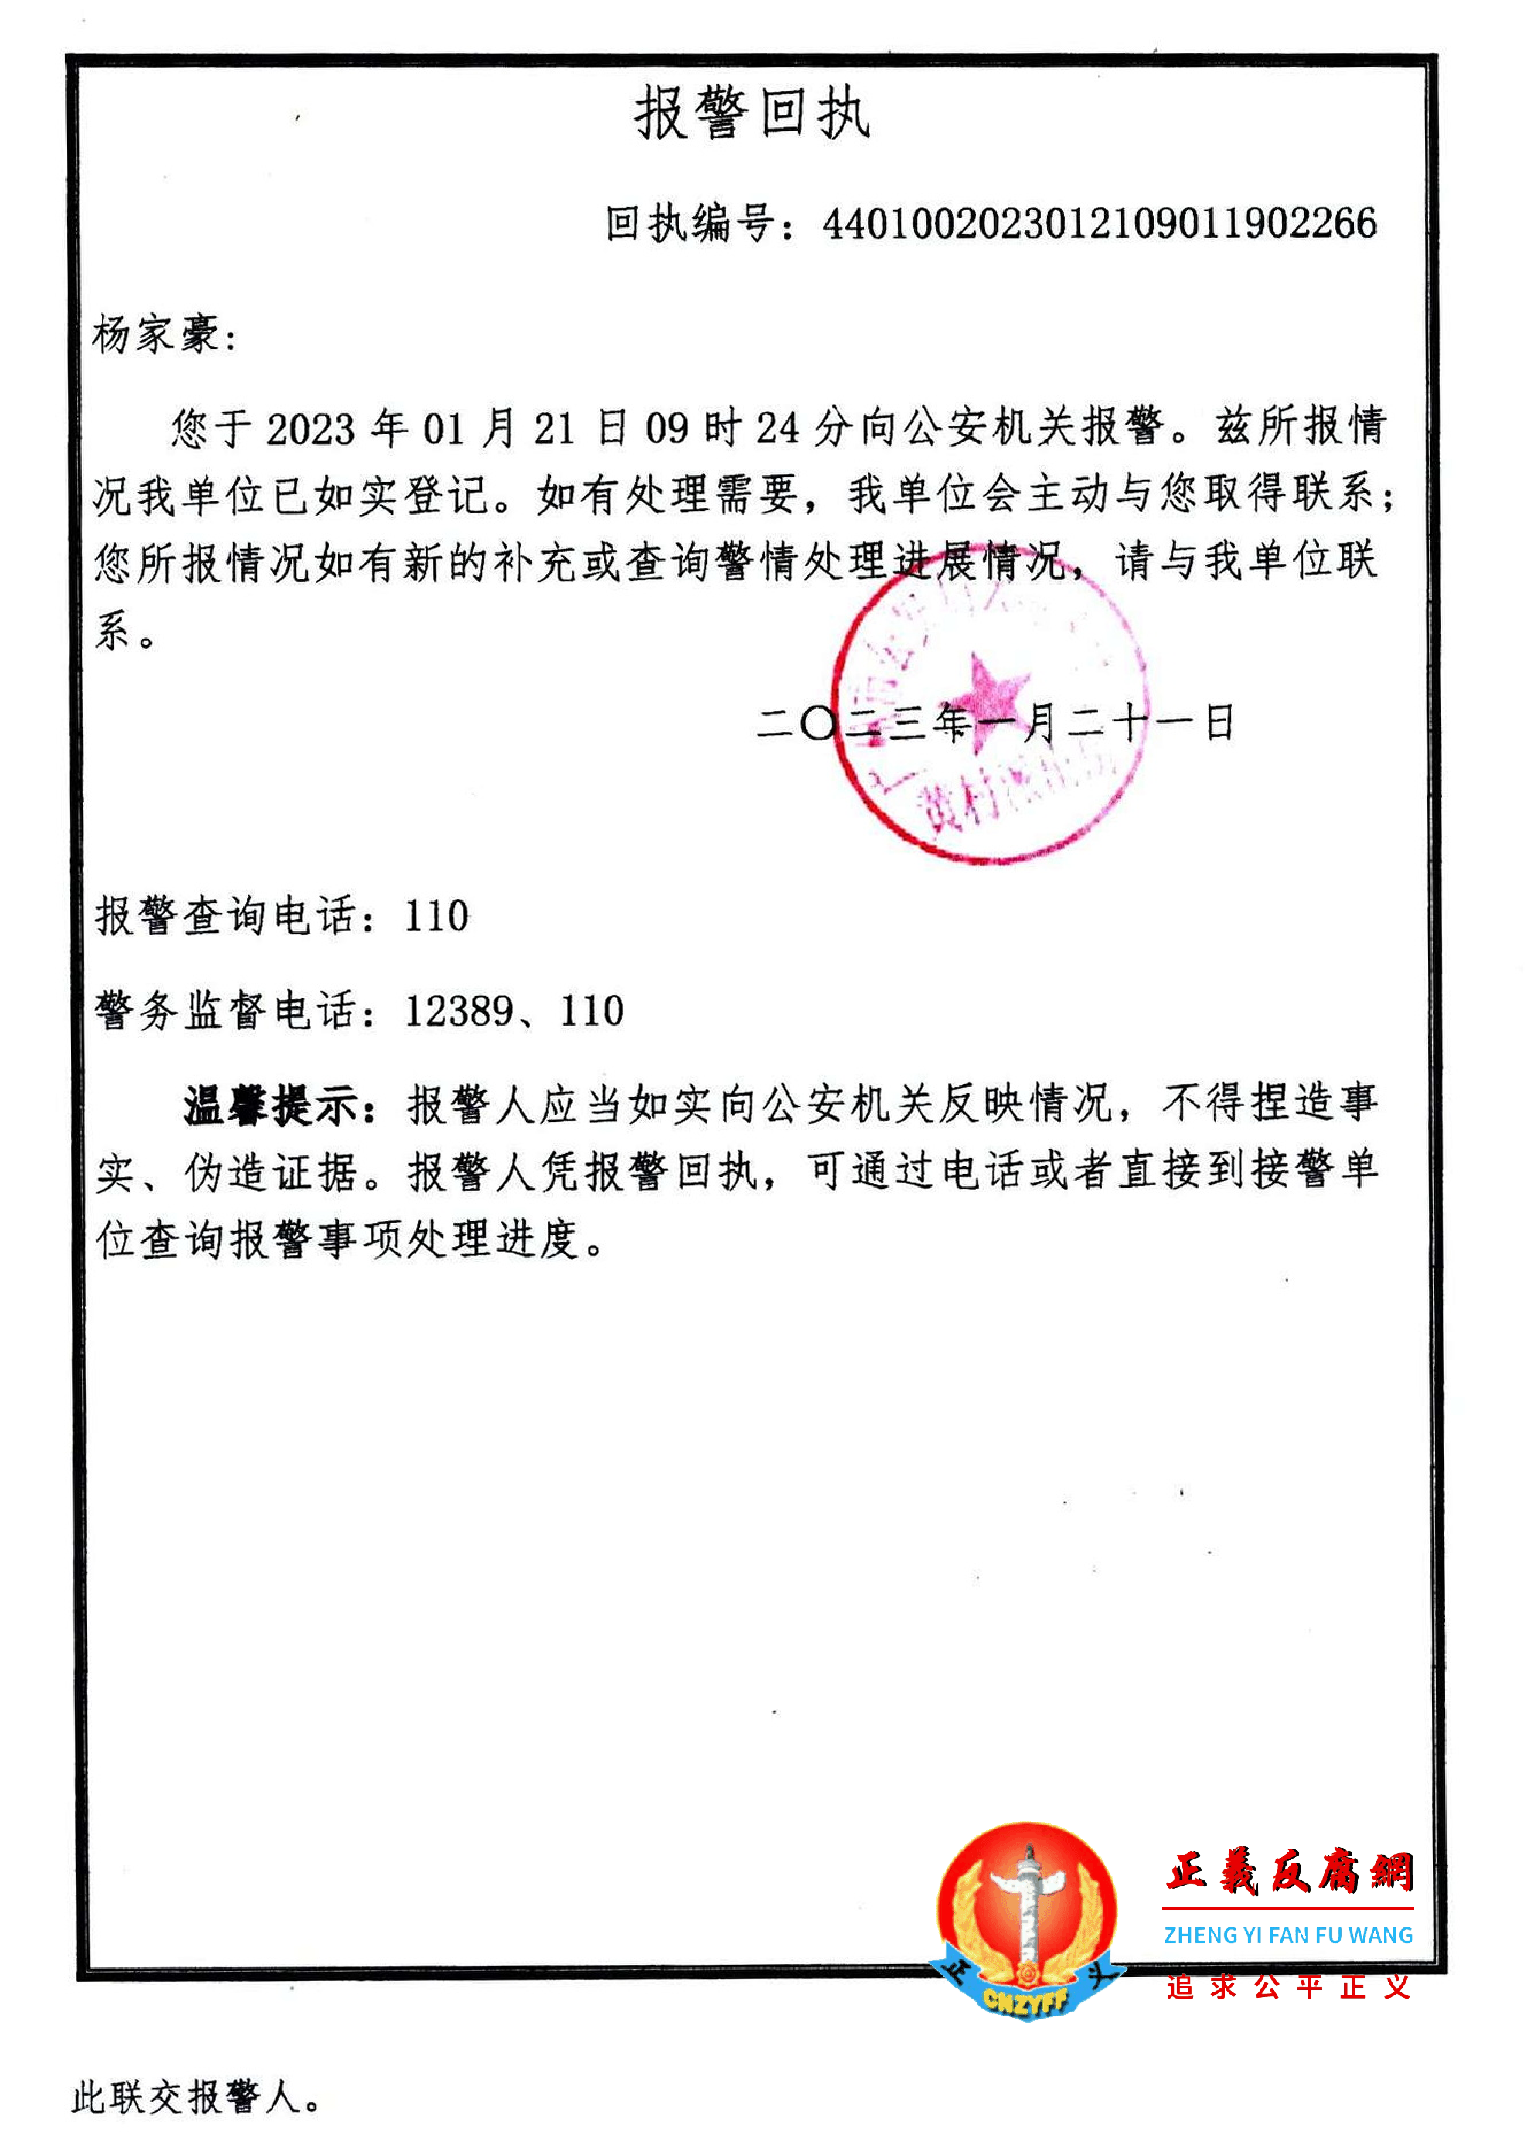 2023年1月23日，杨家豪遭绑架抢劫报警的广州市公安局天河区分局黄村派出所《报警回执》。.png